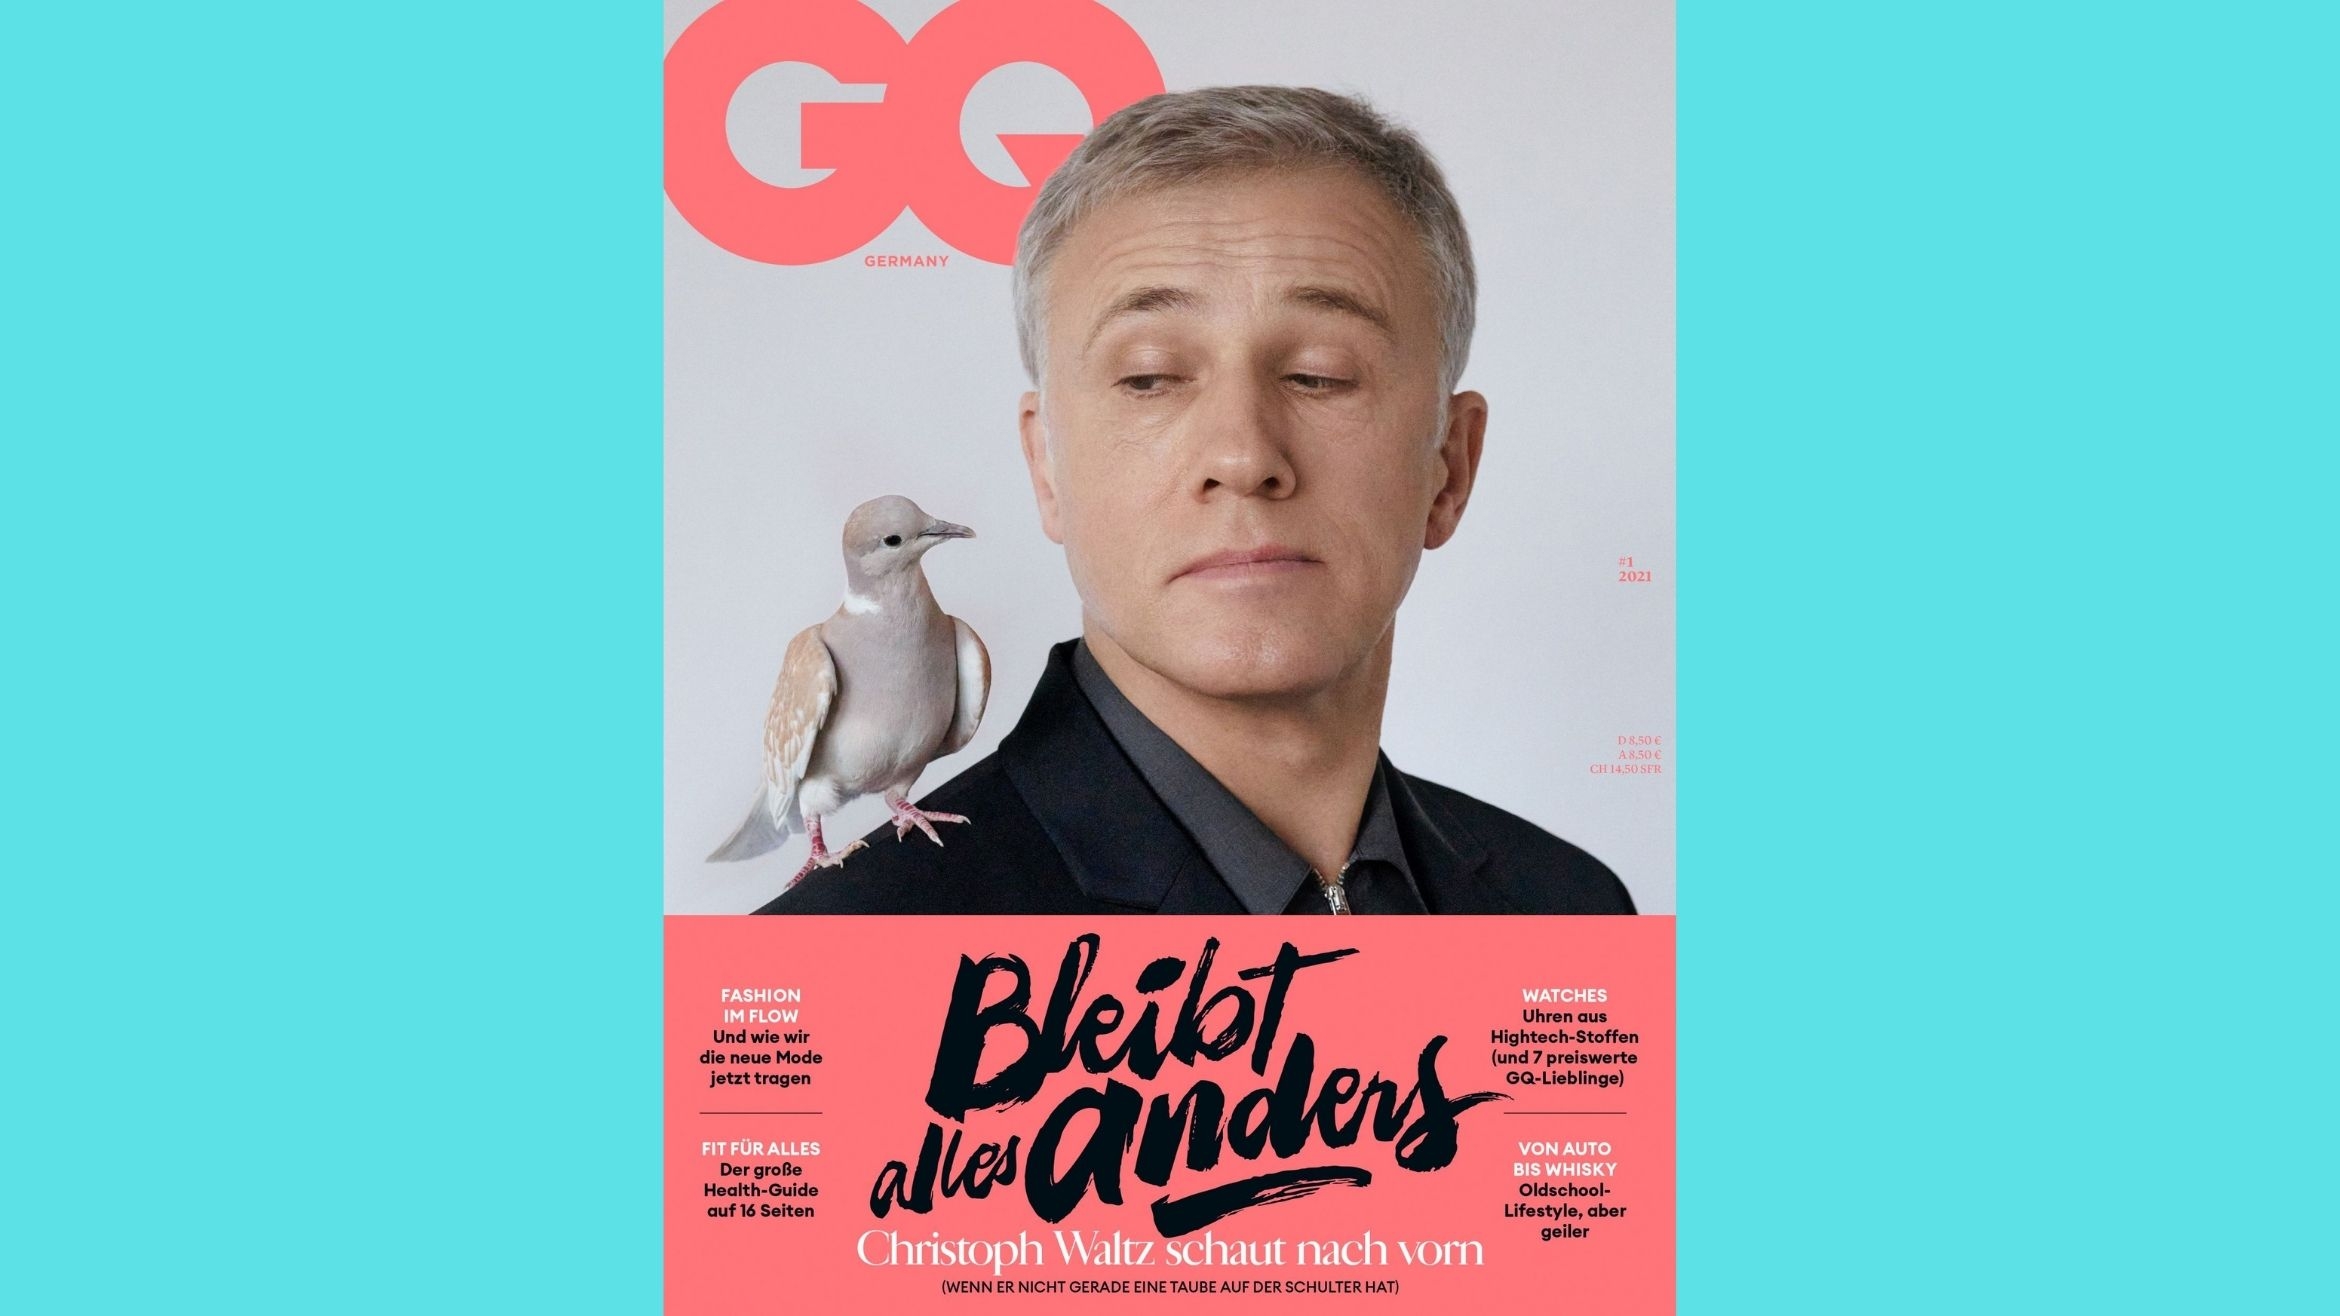 Die GQ erscheint künftig einmal im Quartal. Erster Coverstar nach dem Relaunch ist Christoph Waltz –